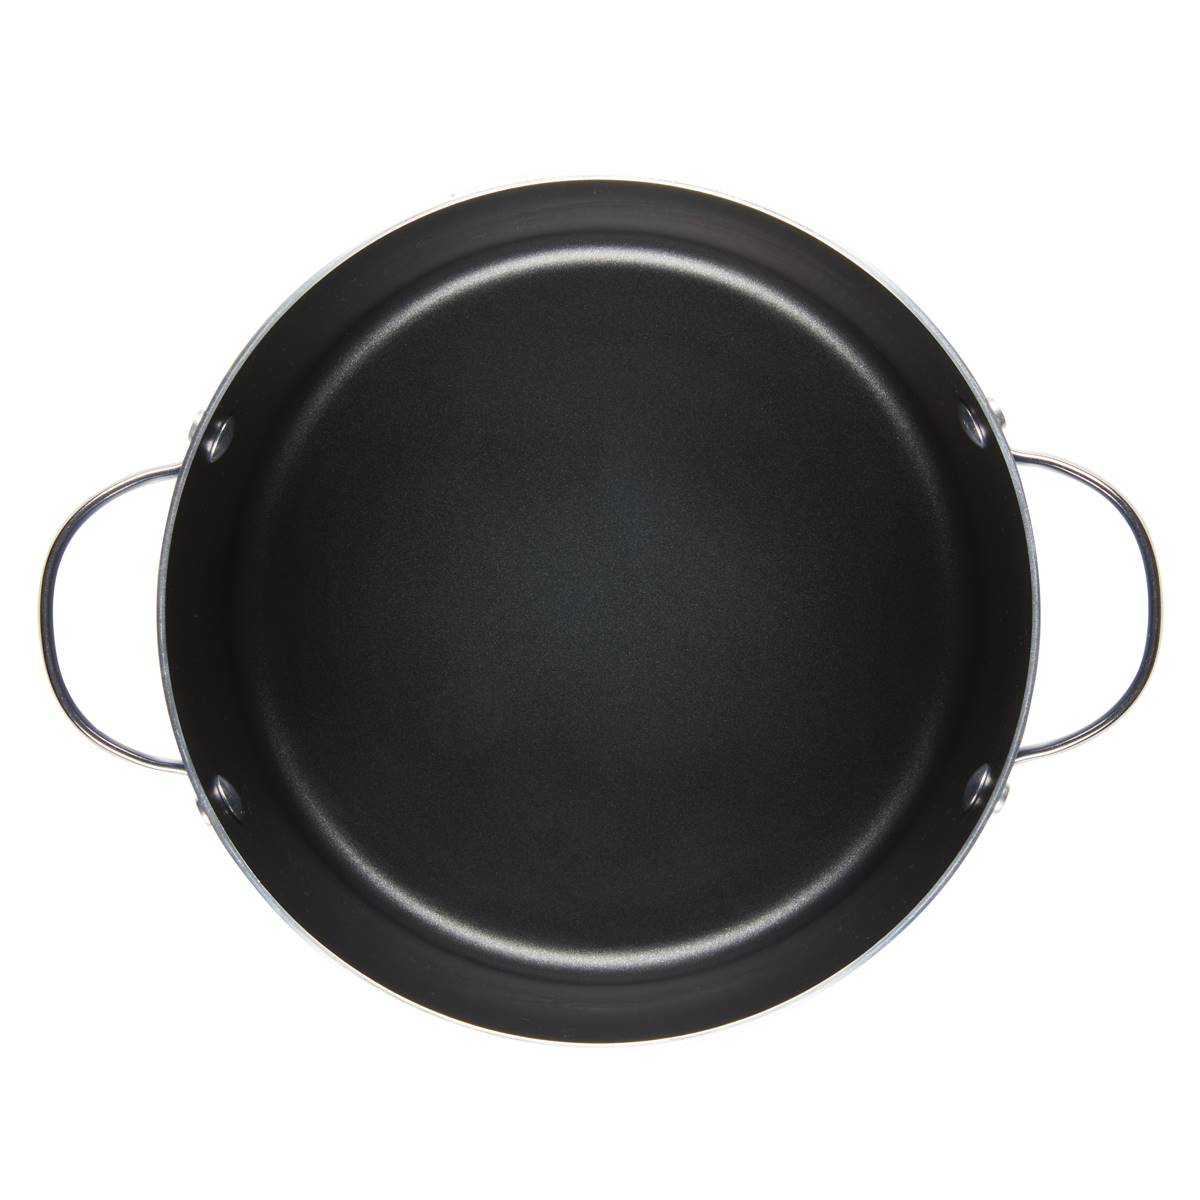 Farberware(R) Style 6qt. Nonstick Cookware Stockpot